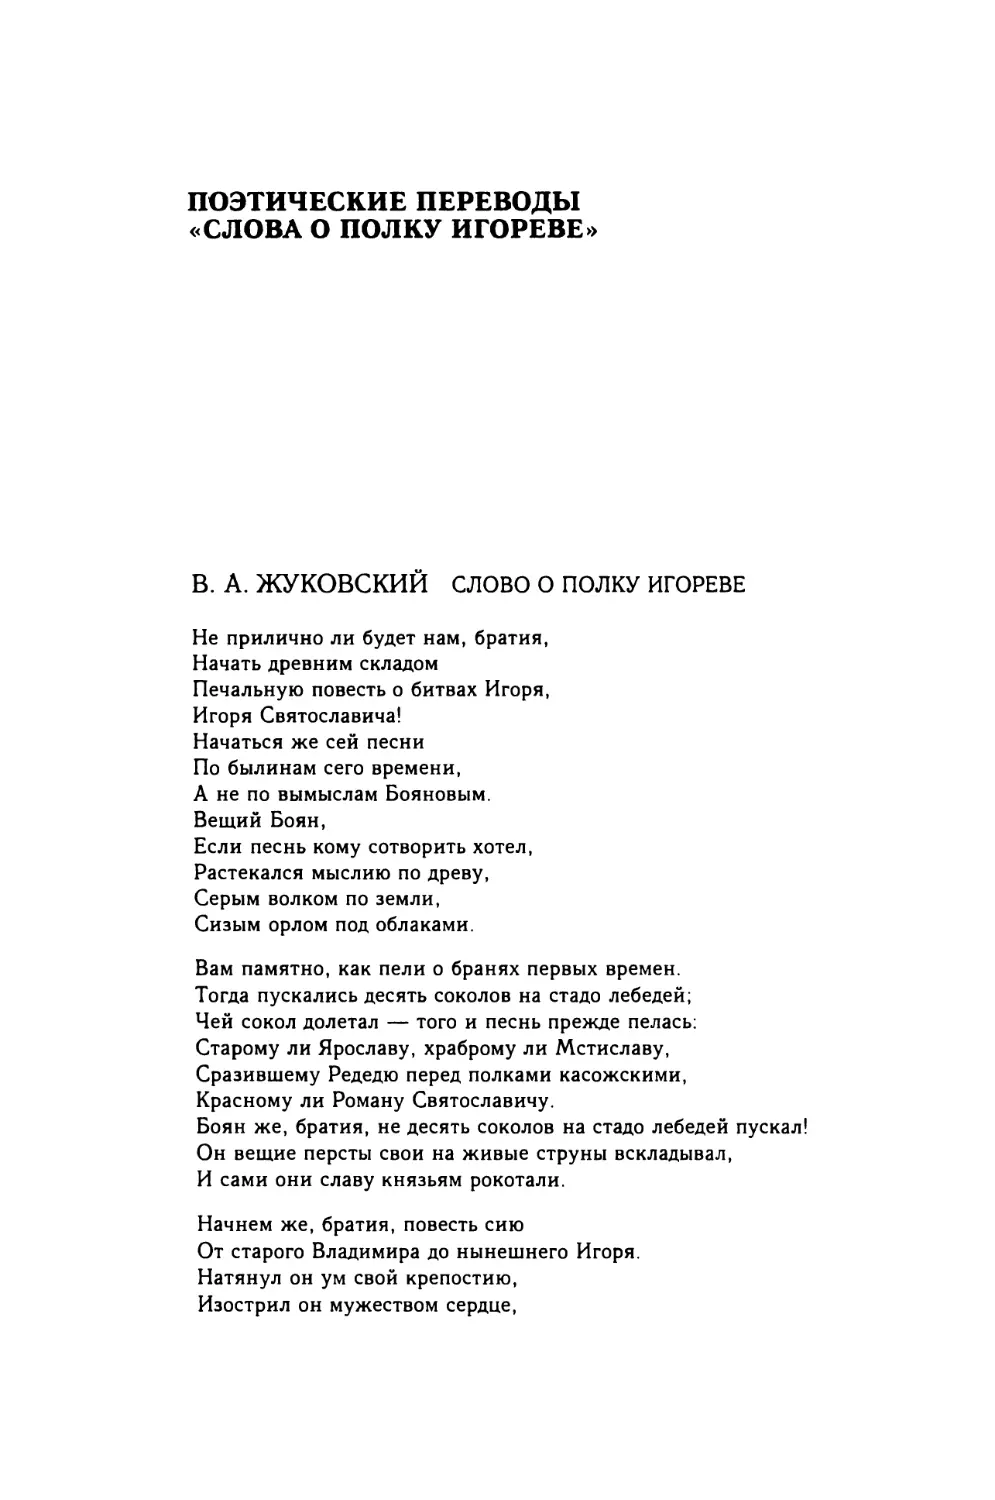 Поэтические переводы «Слова о полку Игореве»